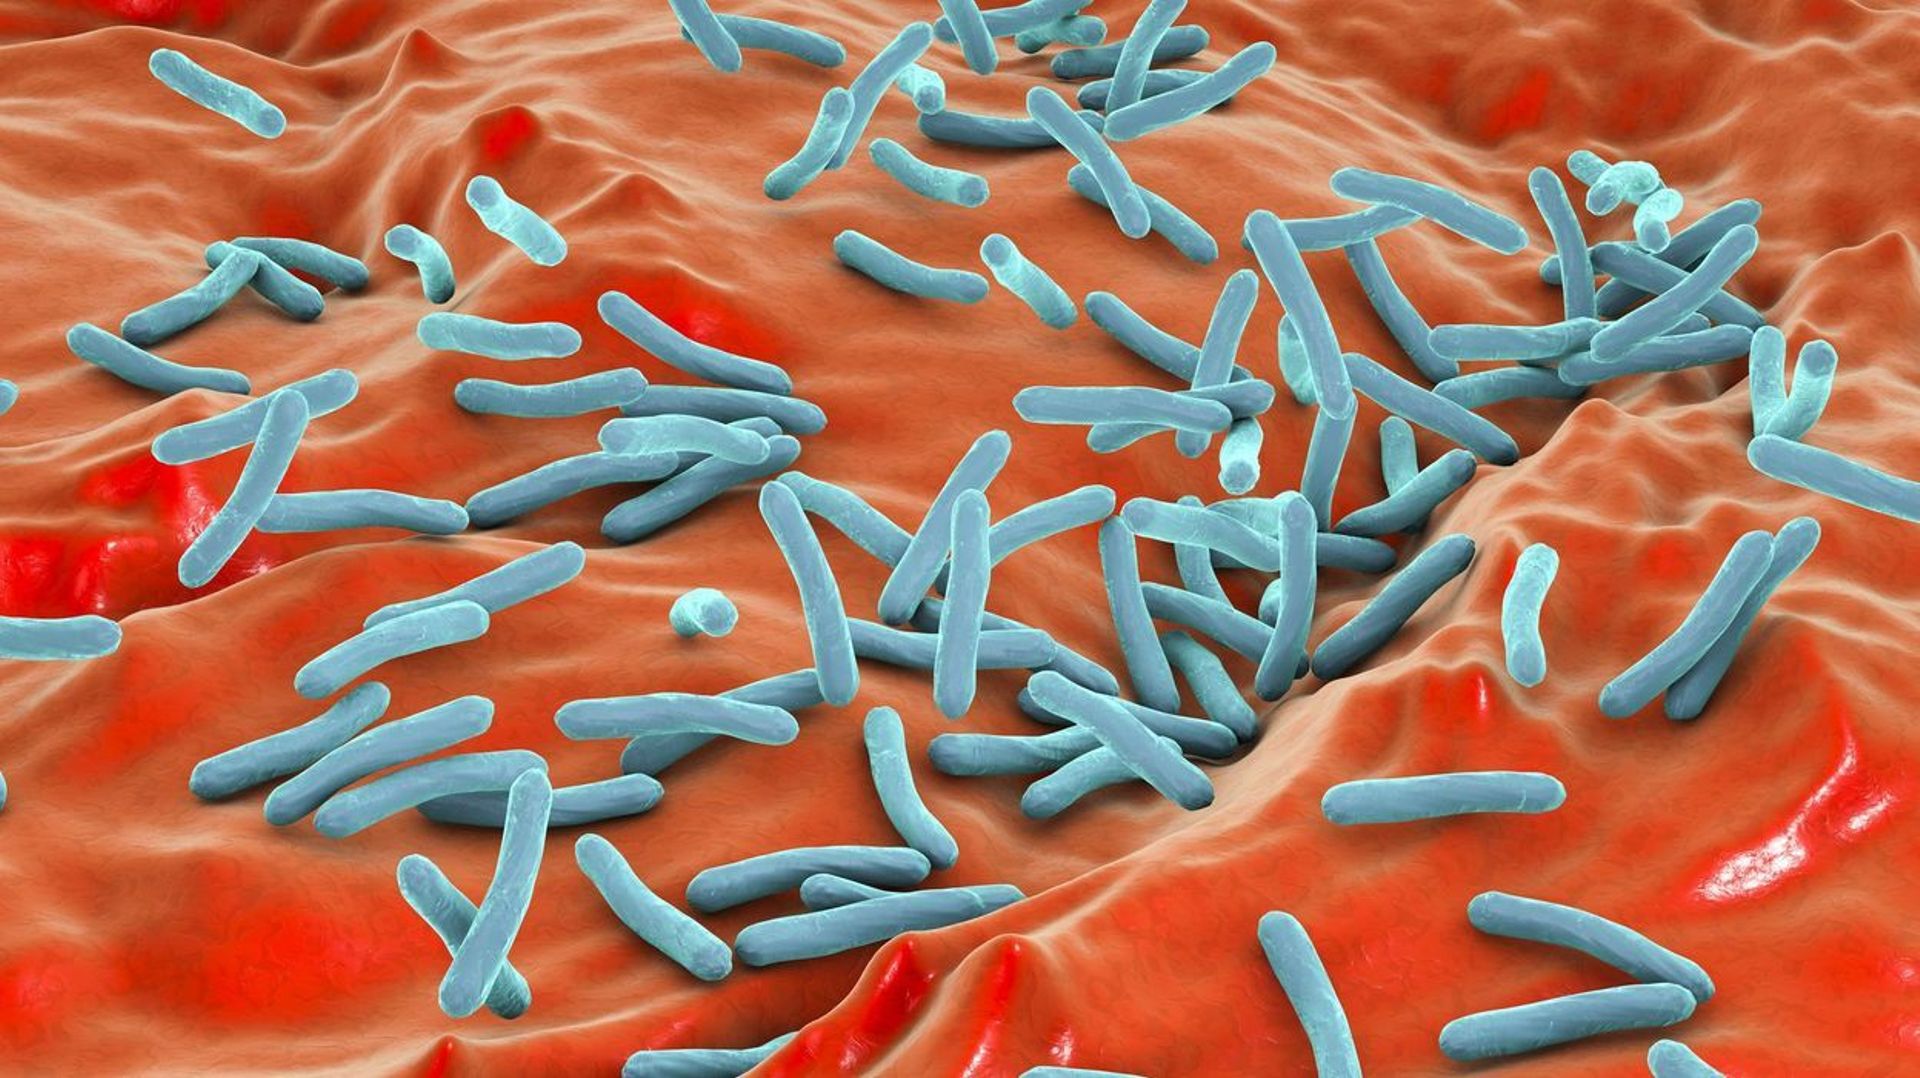 Bruxelles connaît plus de cas de tuberculose que le reste du pays